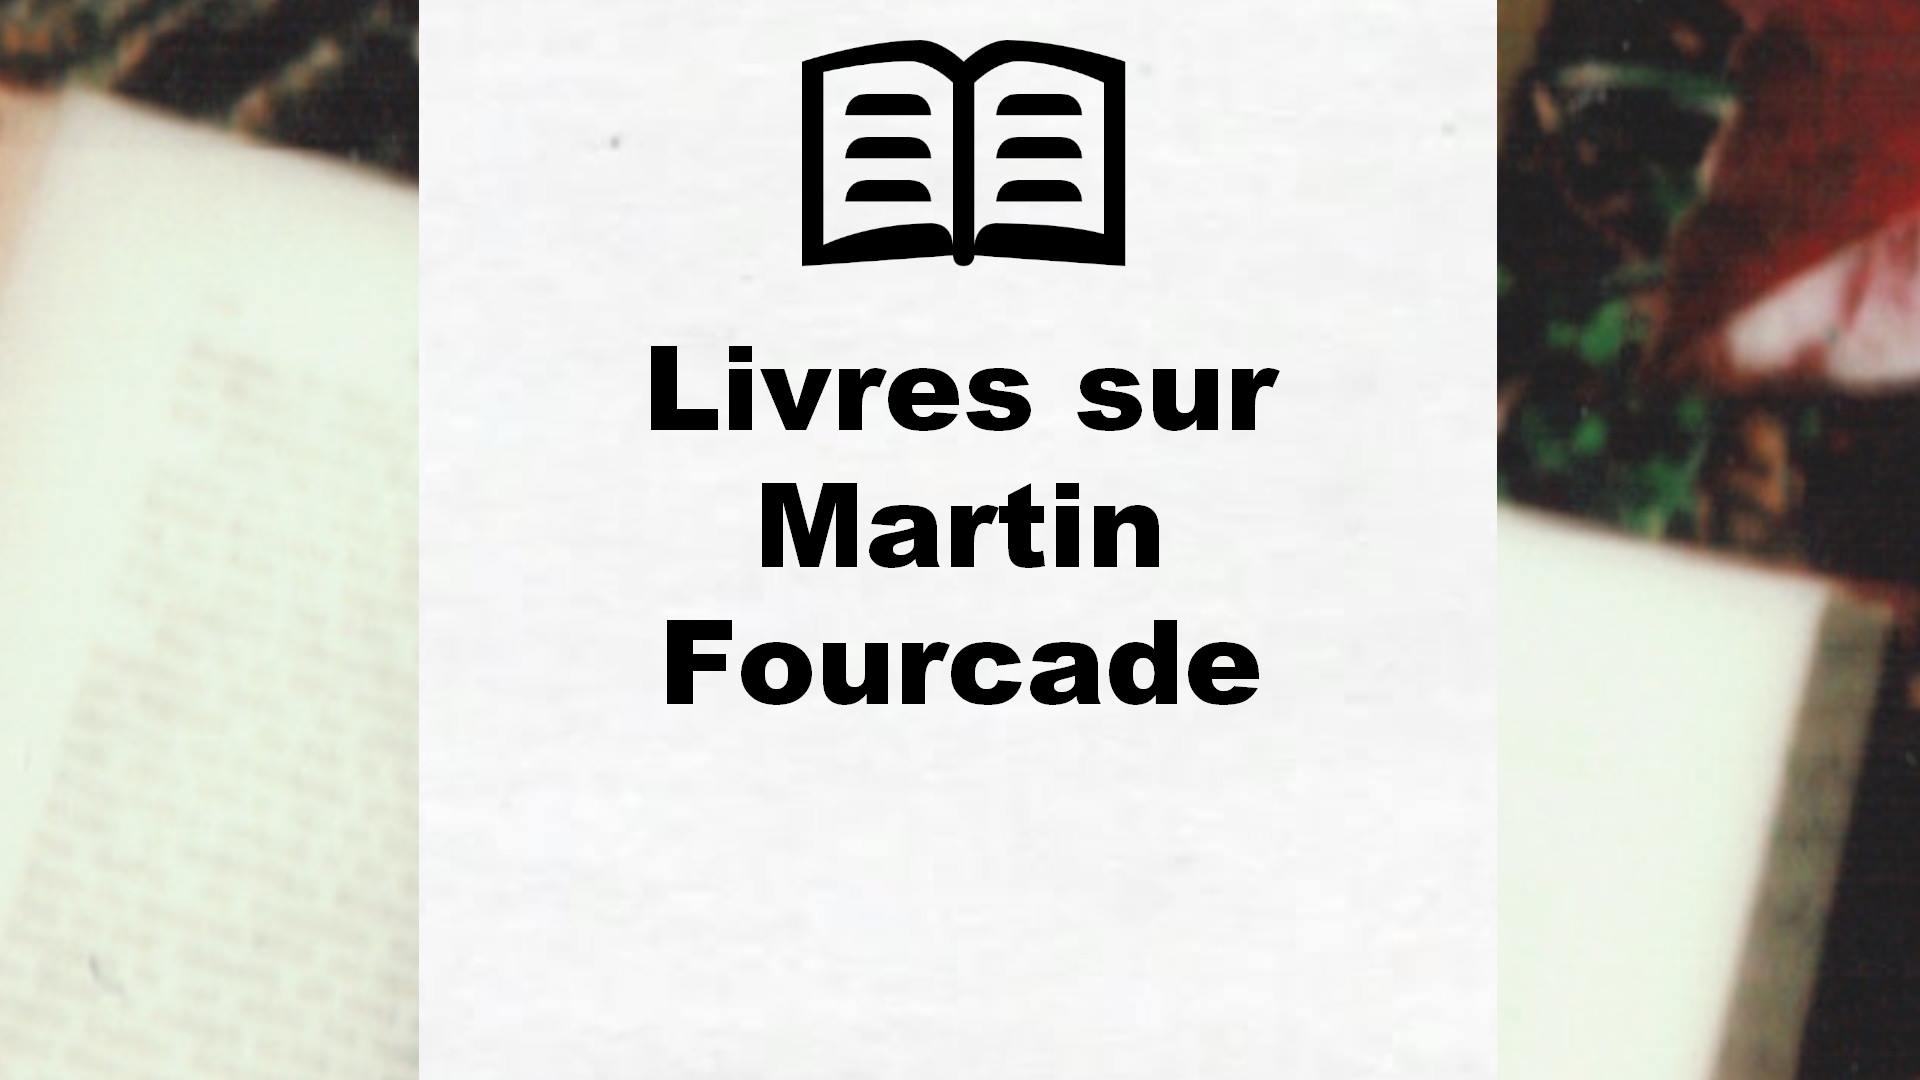 Livres sur Martin Fourcade